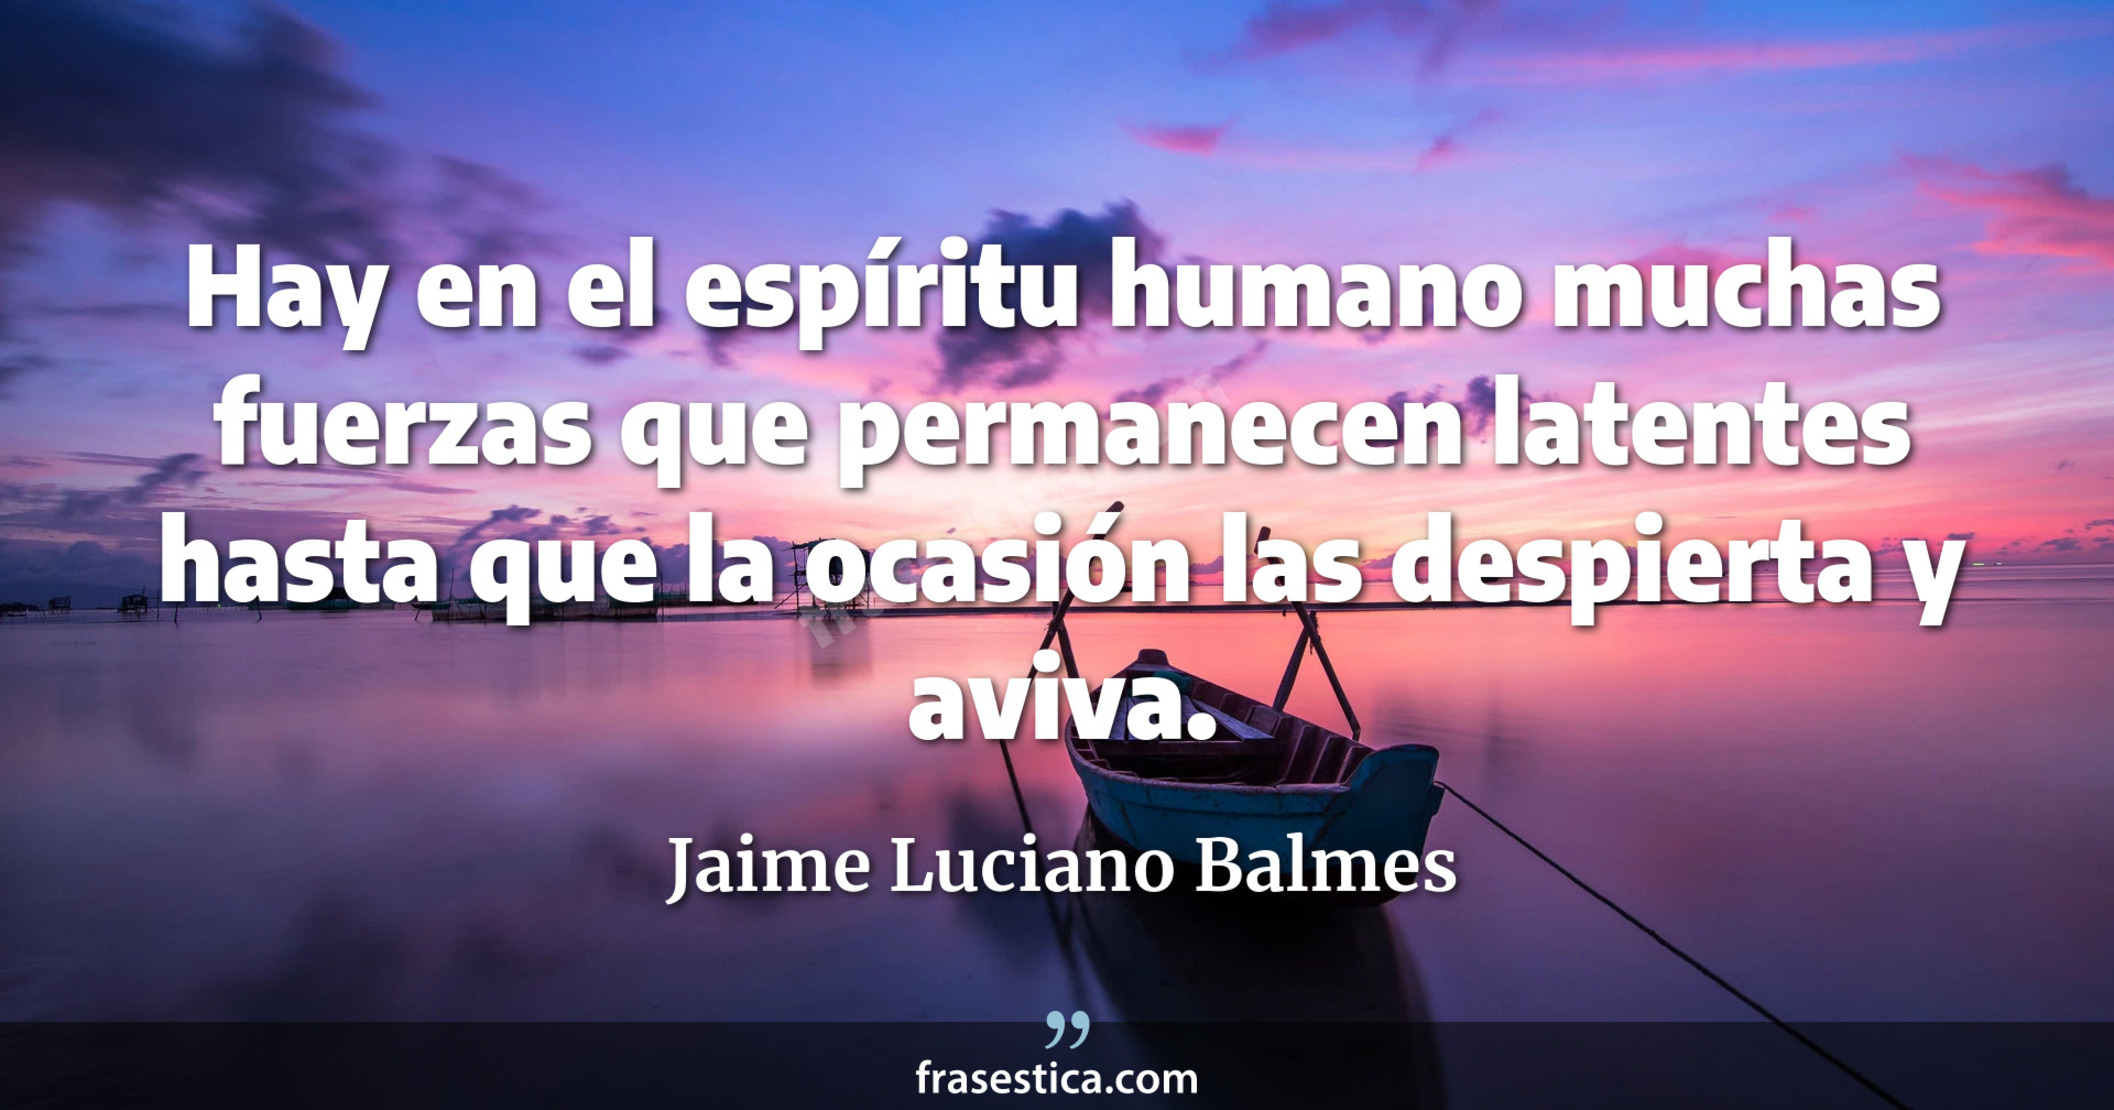 Hay en el espíritu humano muchas fuerzas que permanecen latentes hasta que la ocasión las despierta y aviva. - Jaime Luciano Balmes